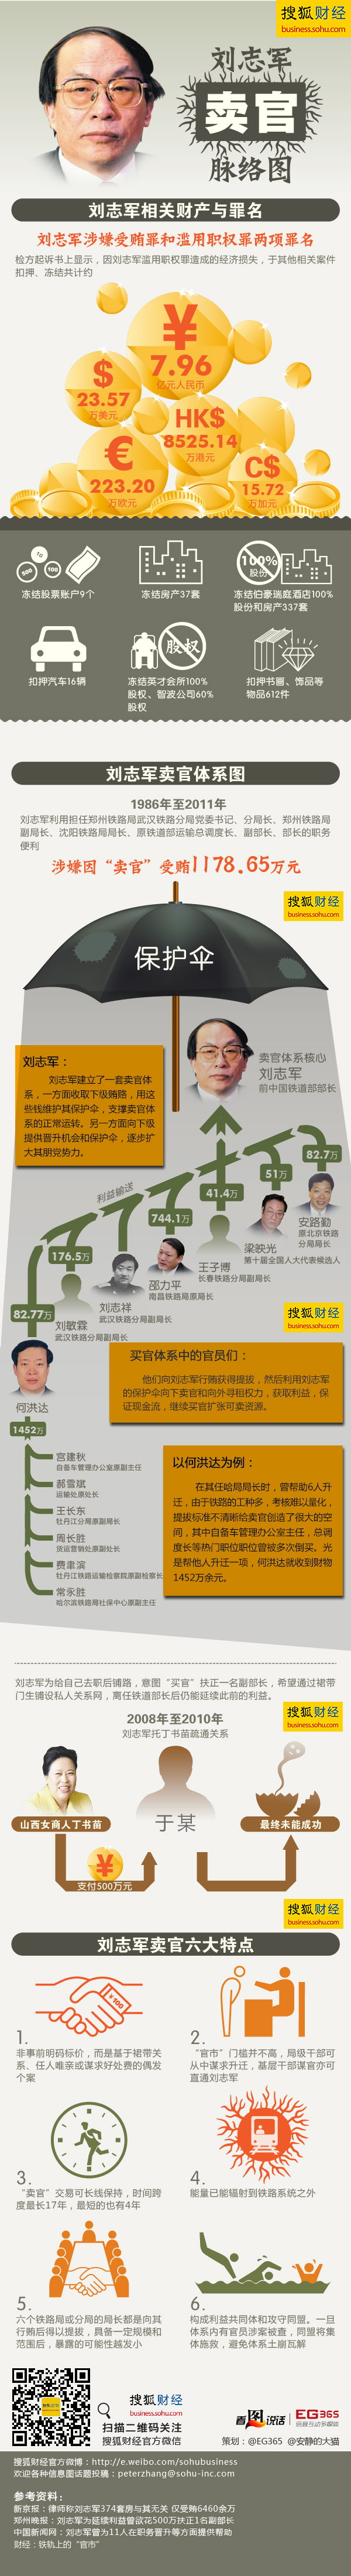 图解财经 第72期： 刘志军卖官脉络图